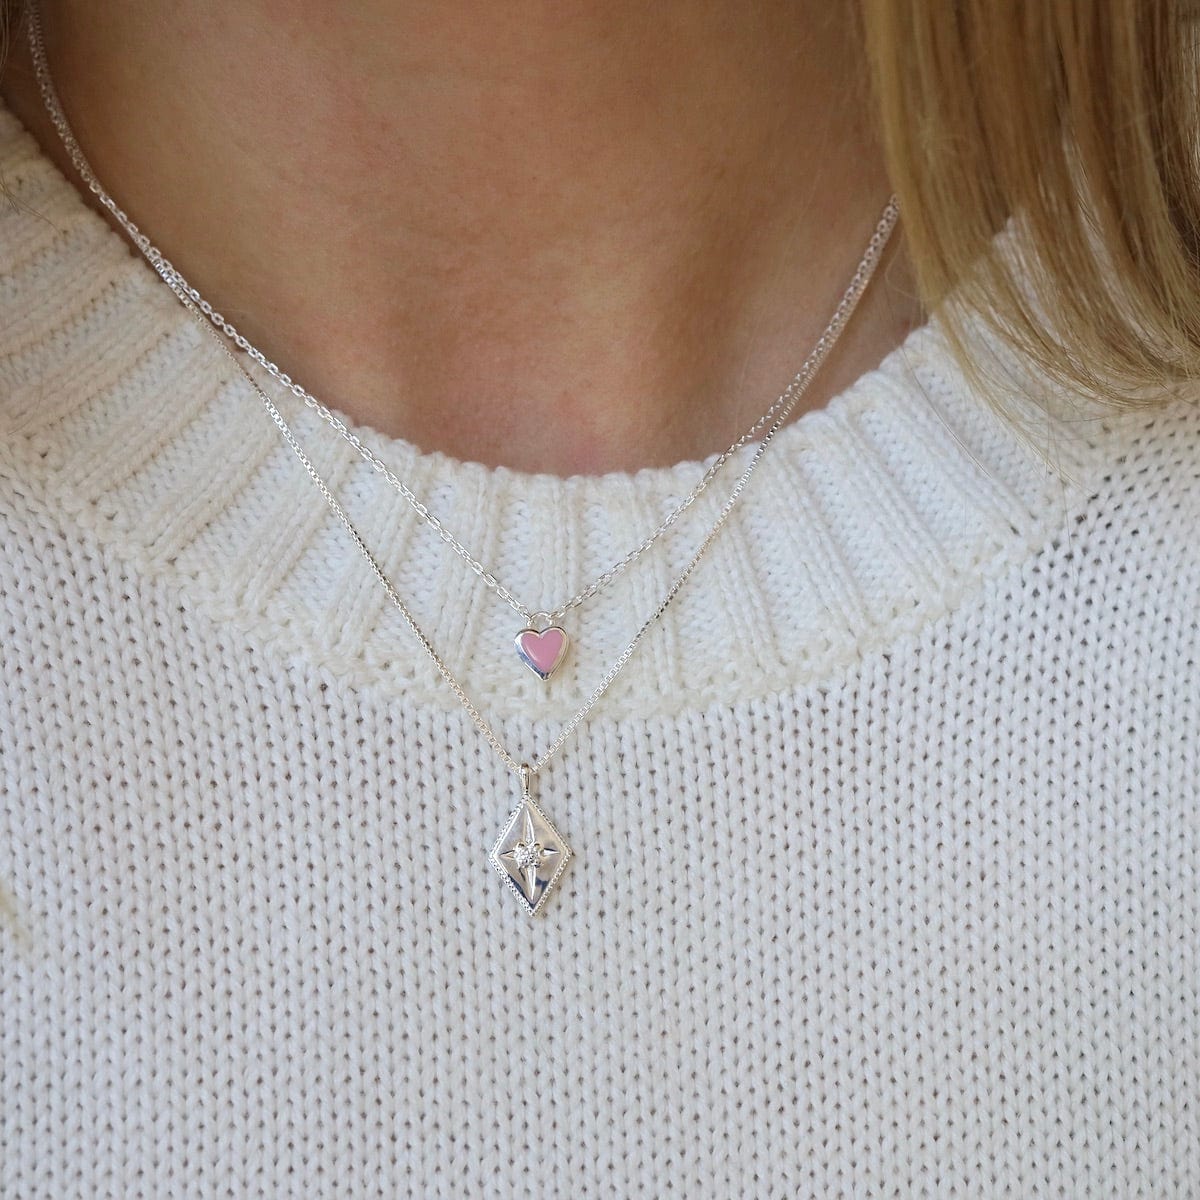 NKL Pink Enamel Heart Necklace in Sterling Silver